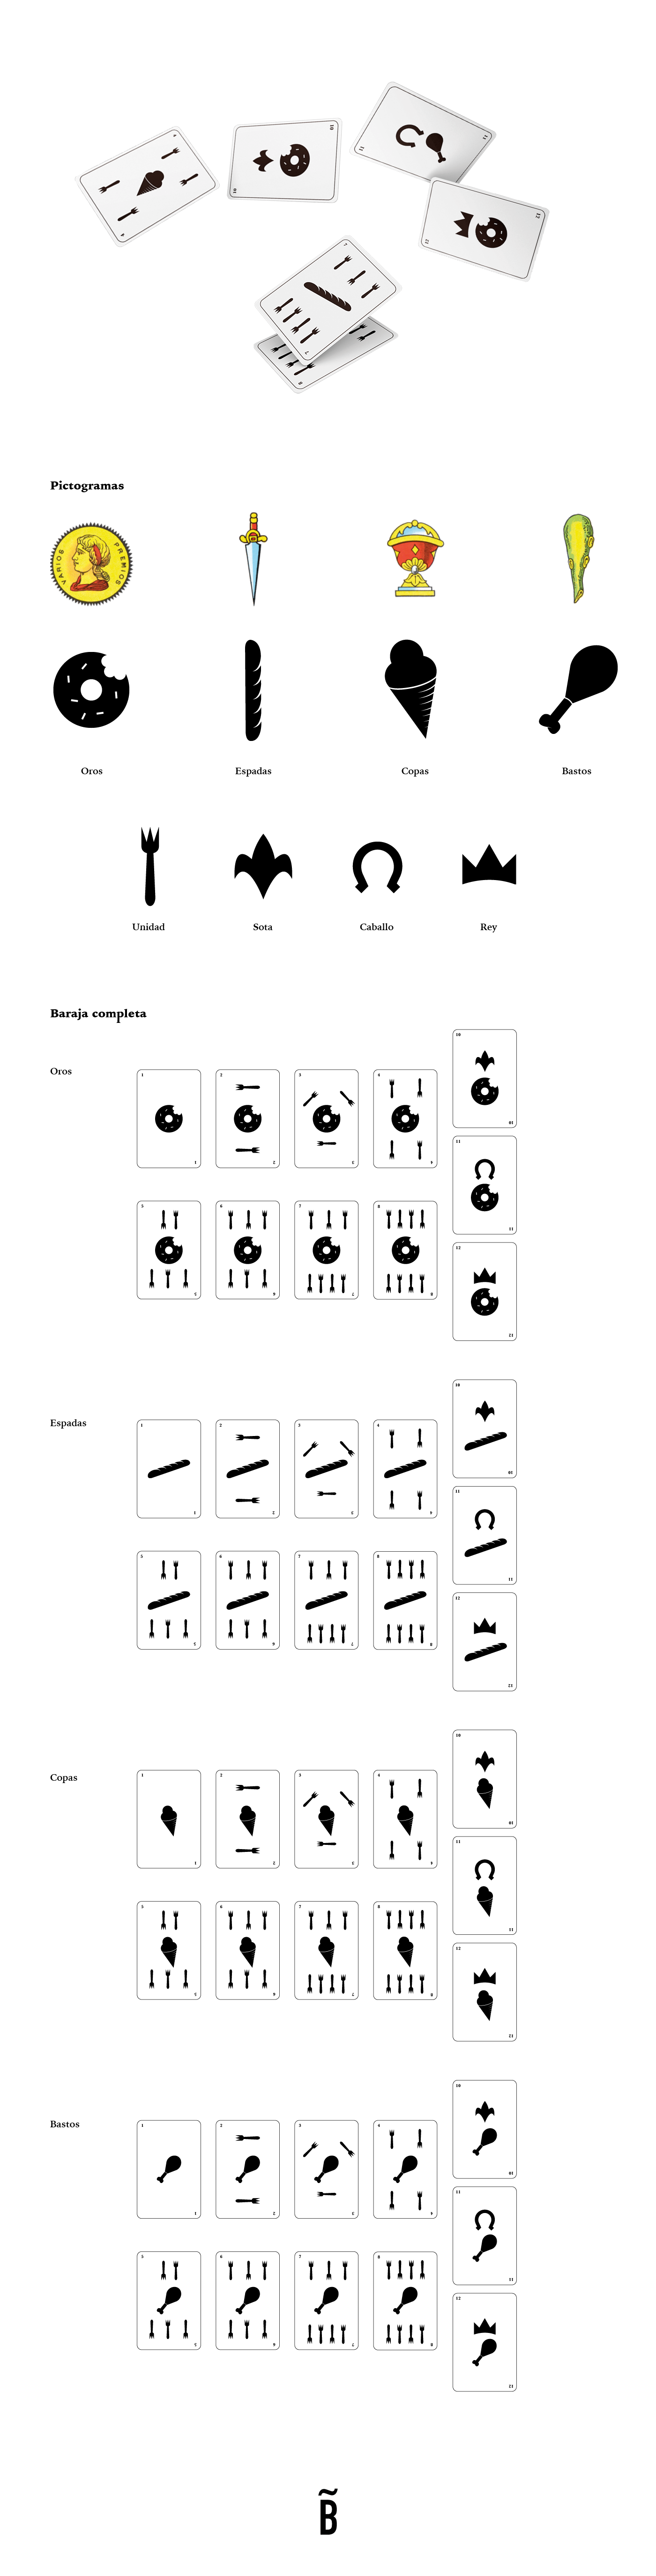 Cards design cards baraja española pictogramas comida diseño gráfico ilustración digital ilustration Figuras cards game